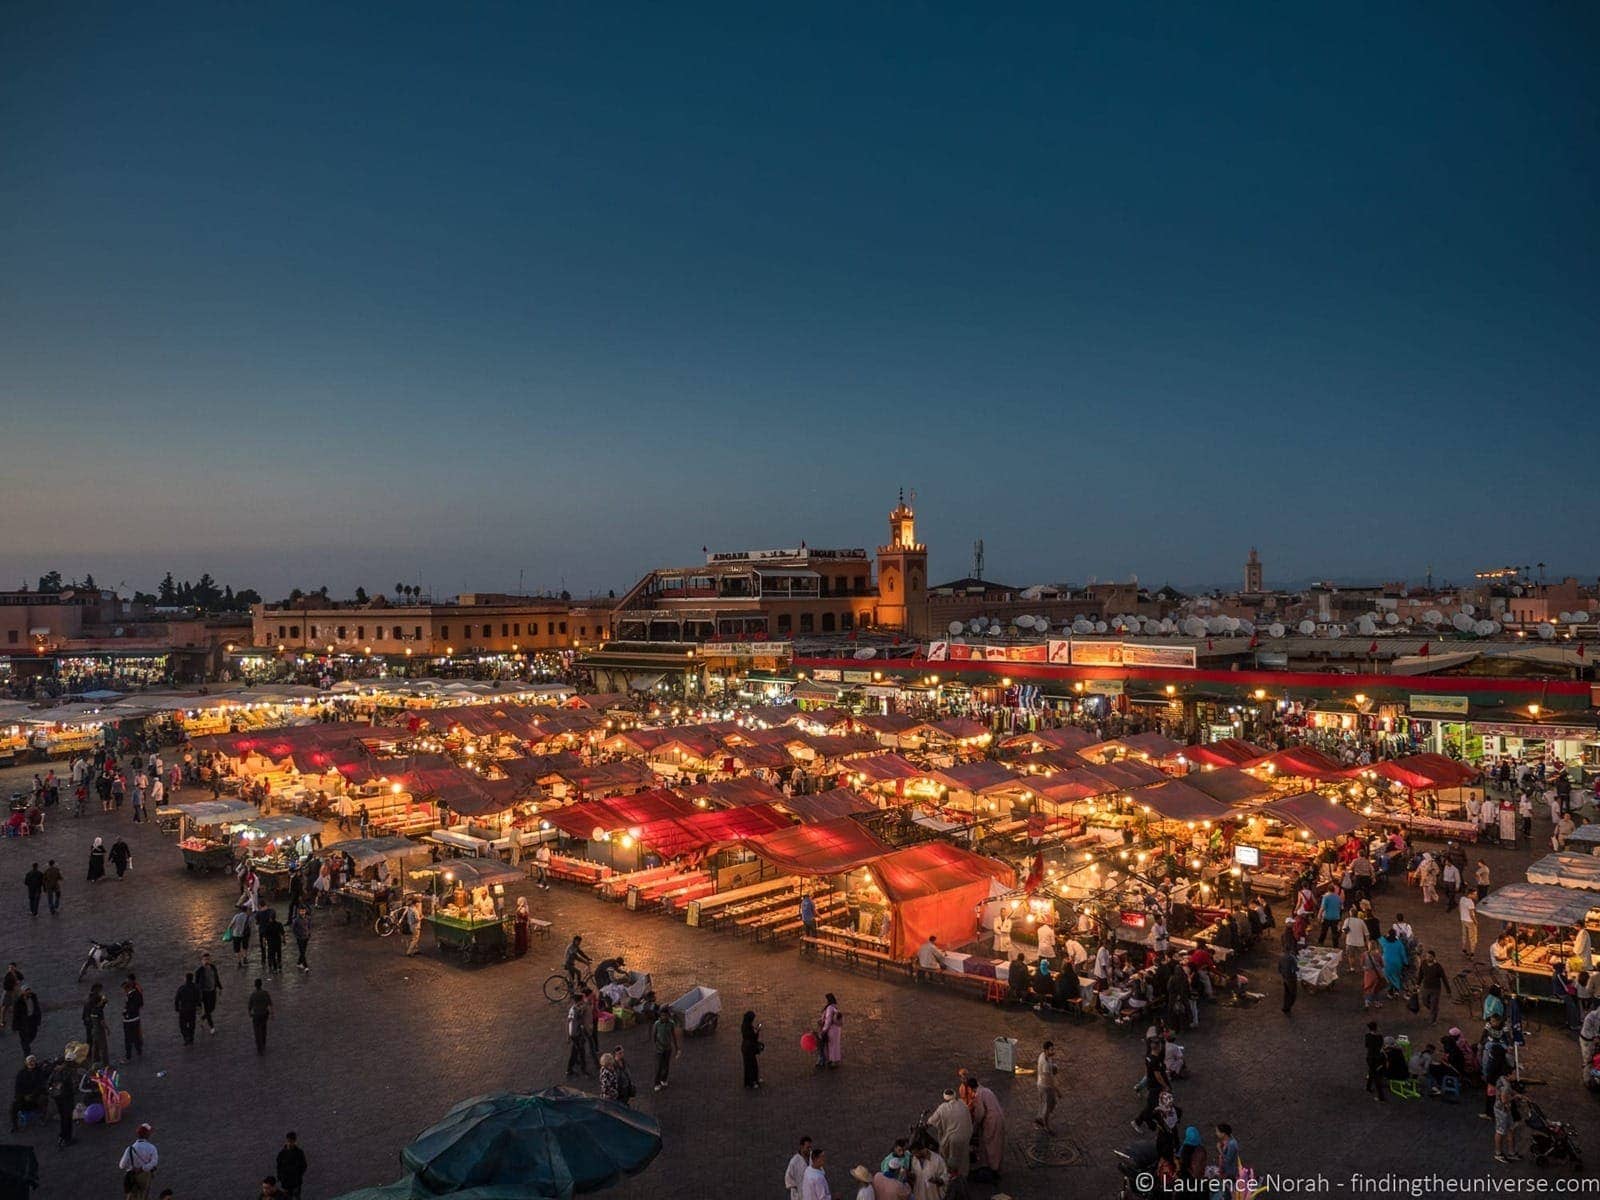 Wanders in Marrakech – A Photo Essay